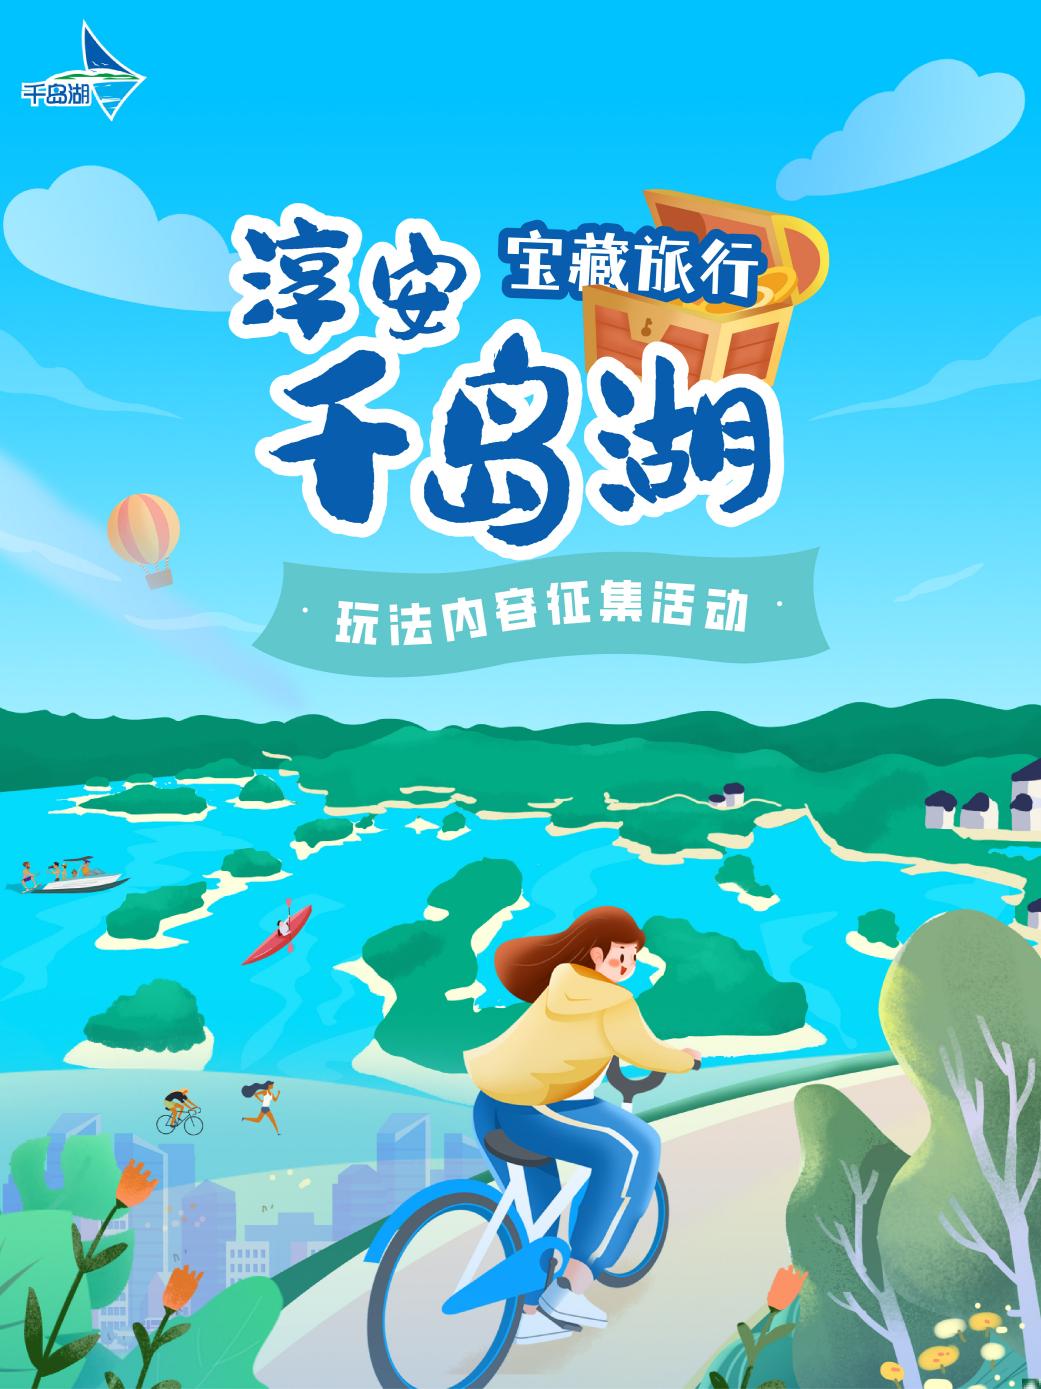 千岛湖宝藏旅行玩法内容征集活动正式上线，赋能旅游新体验 